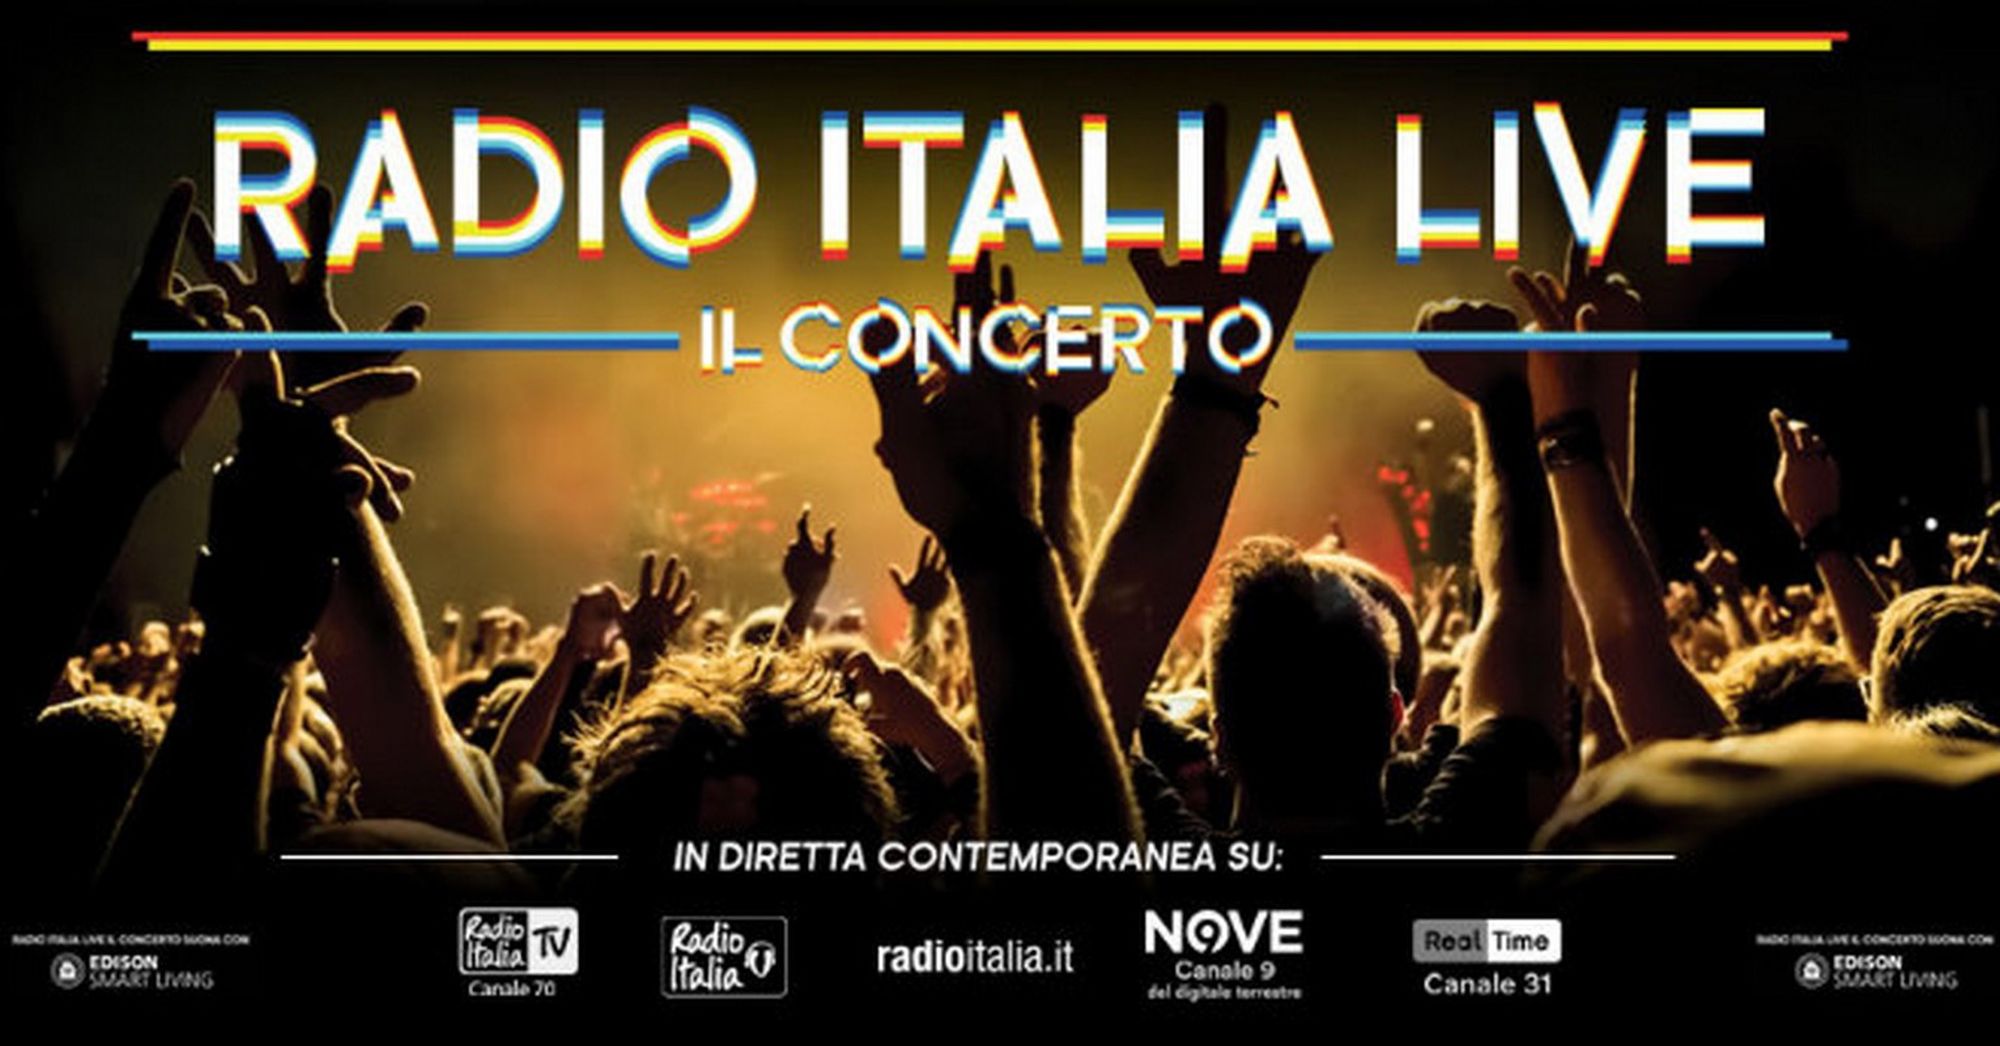 Radio Italia Live Il Concerto 2019 Palermo: scaletta, orari, come arrivare